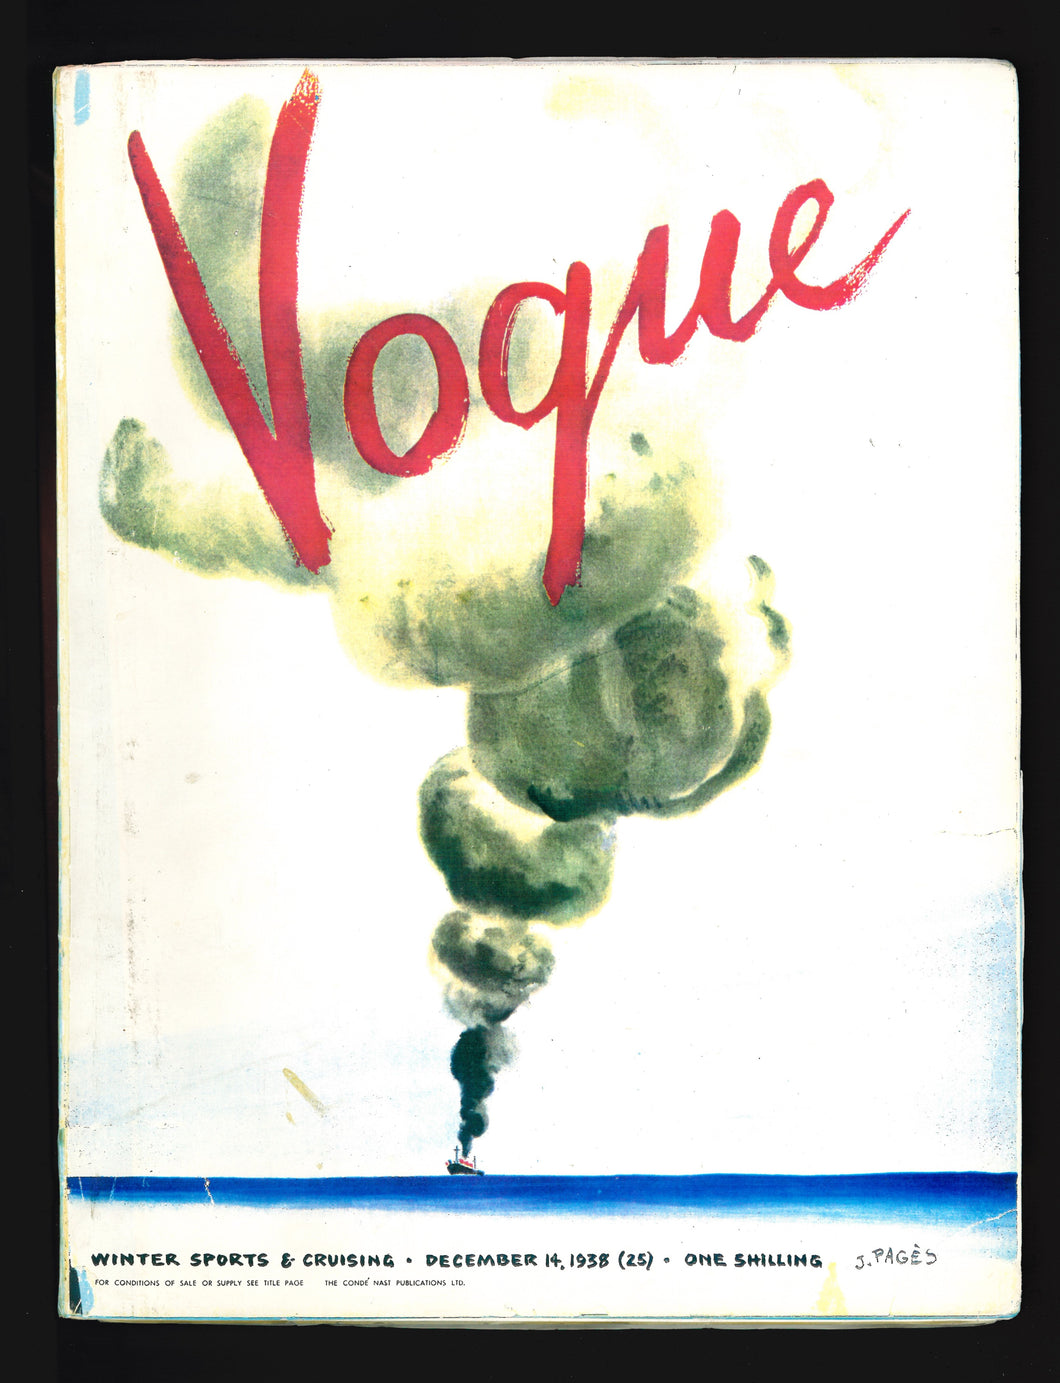 Vogue UK Dec 14 1938